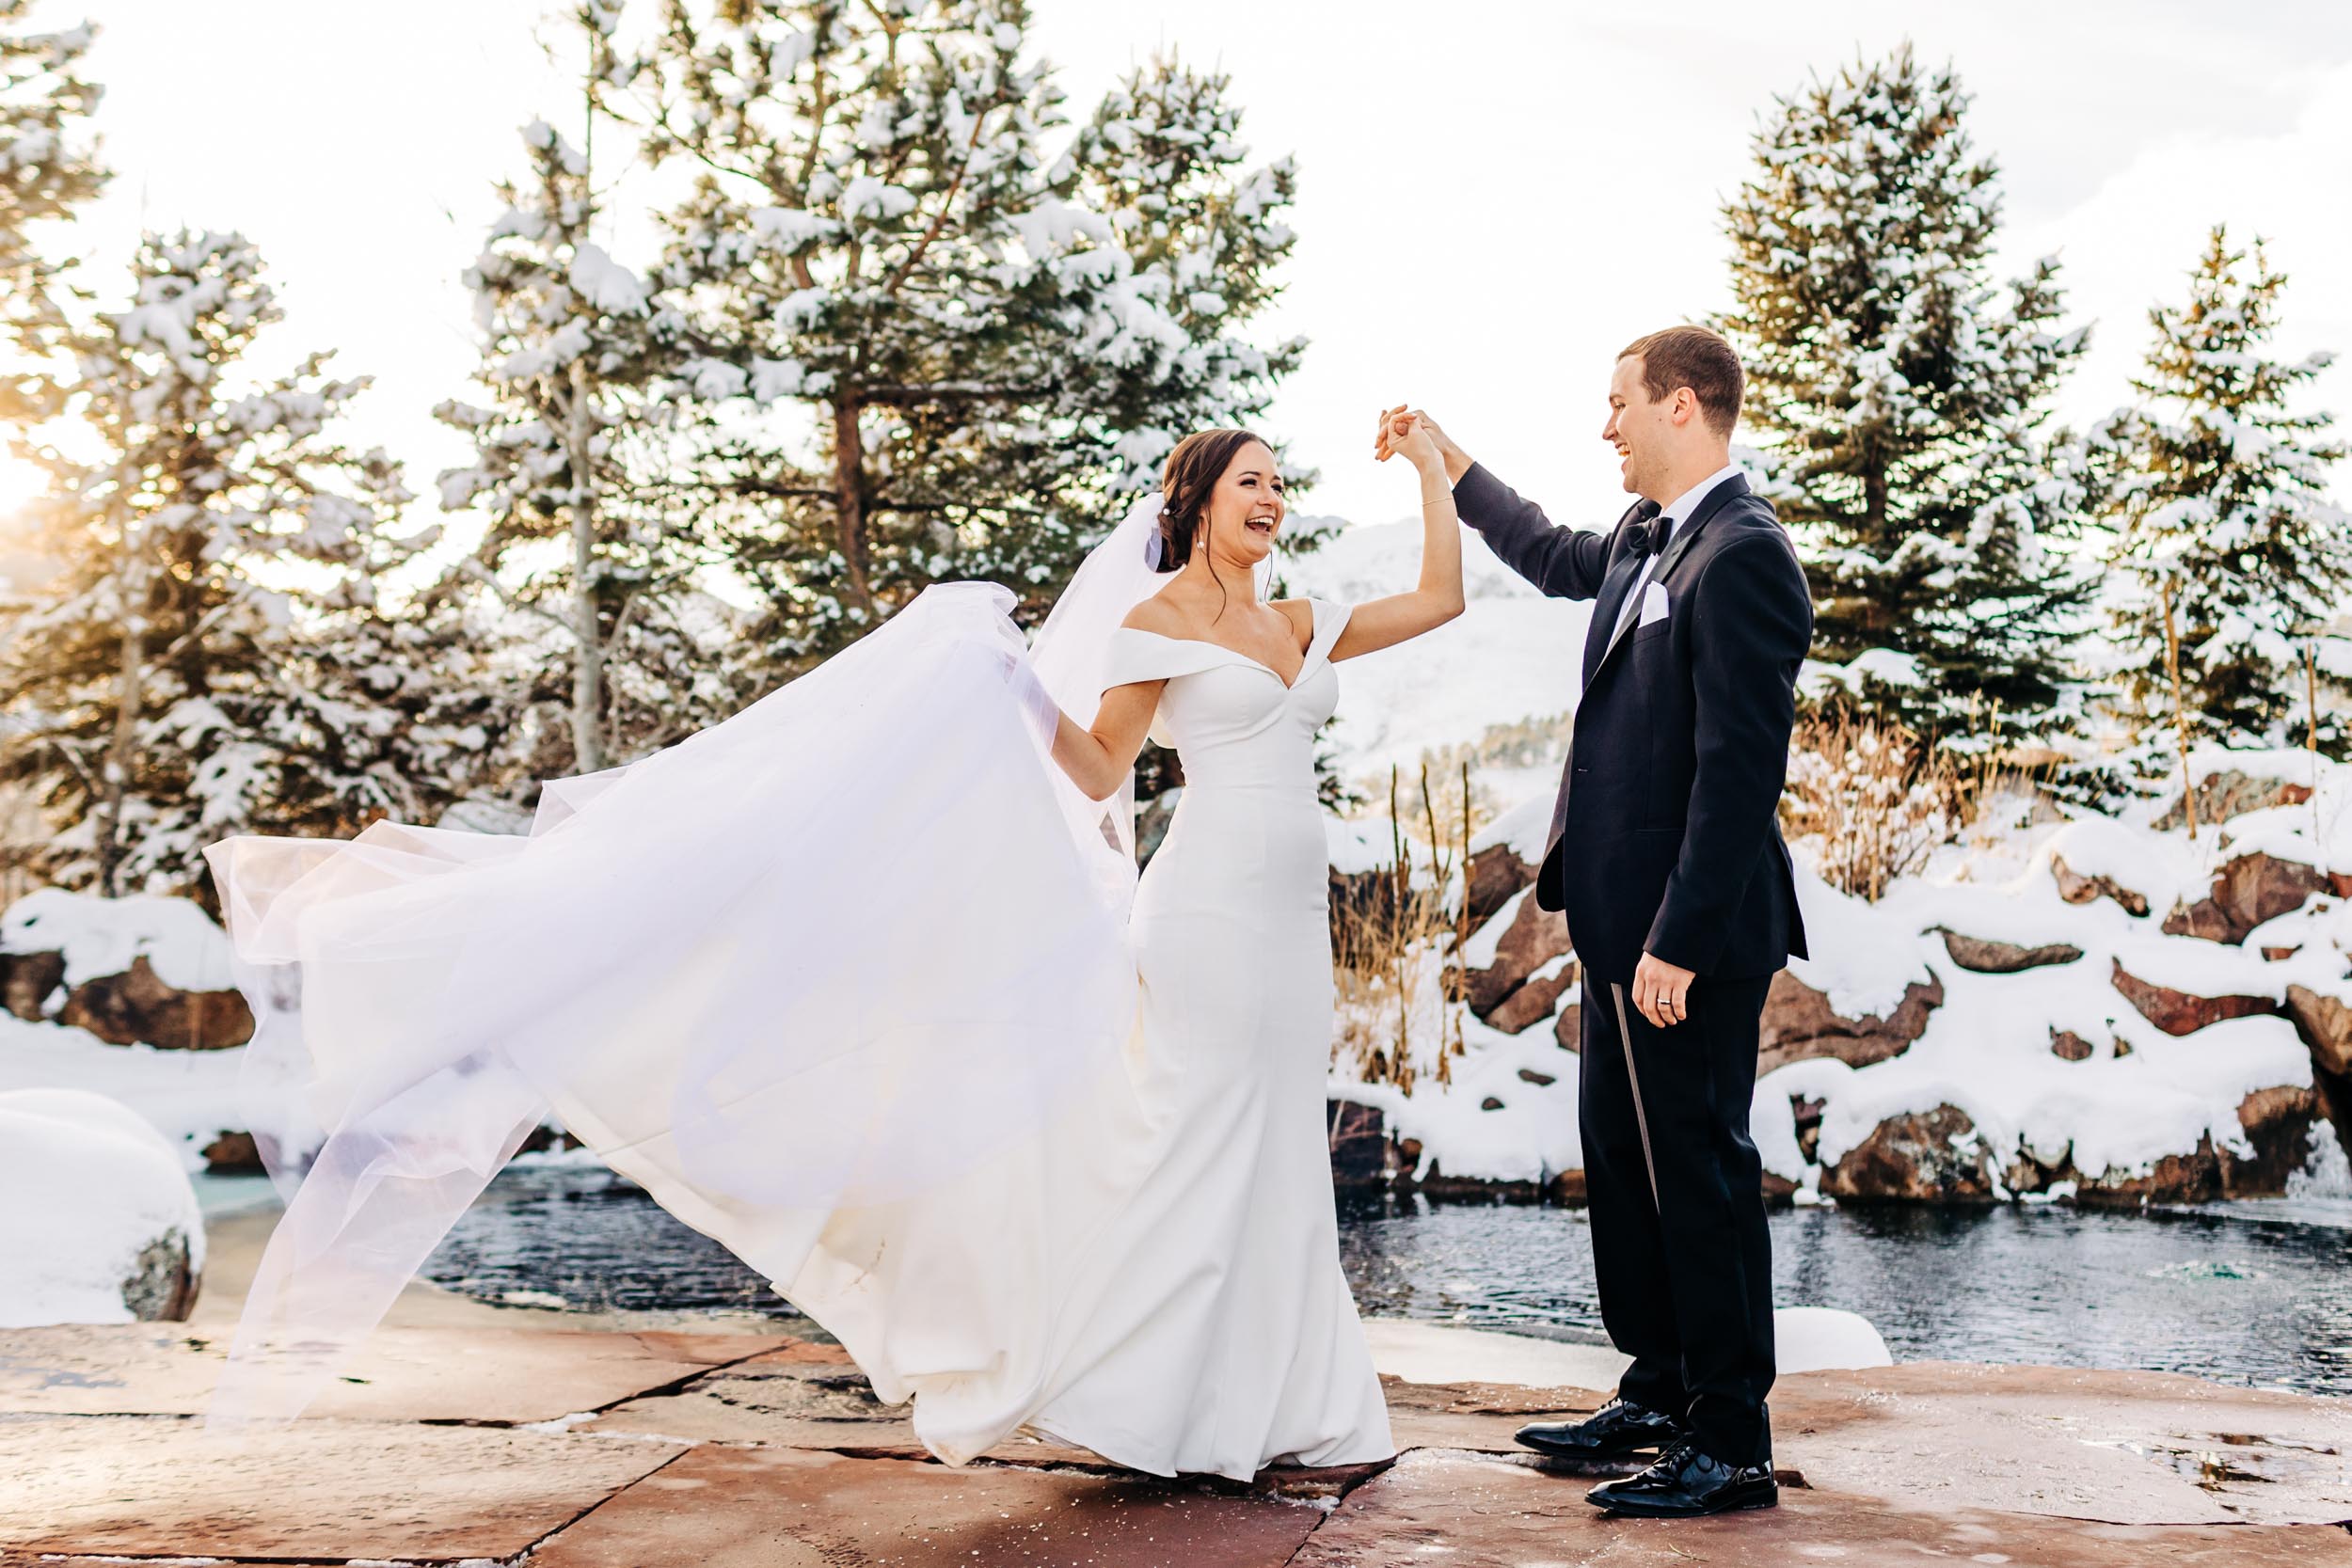 Winter wedding photos at The Greenbriar Inn in Boulder Colorado